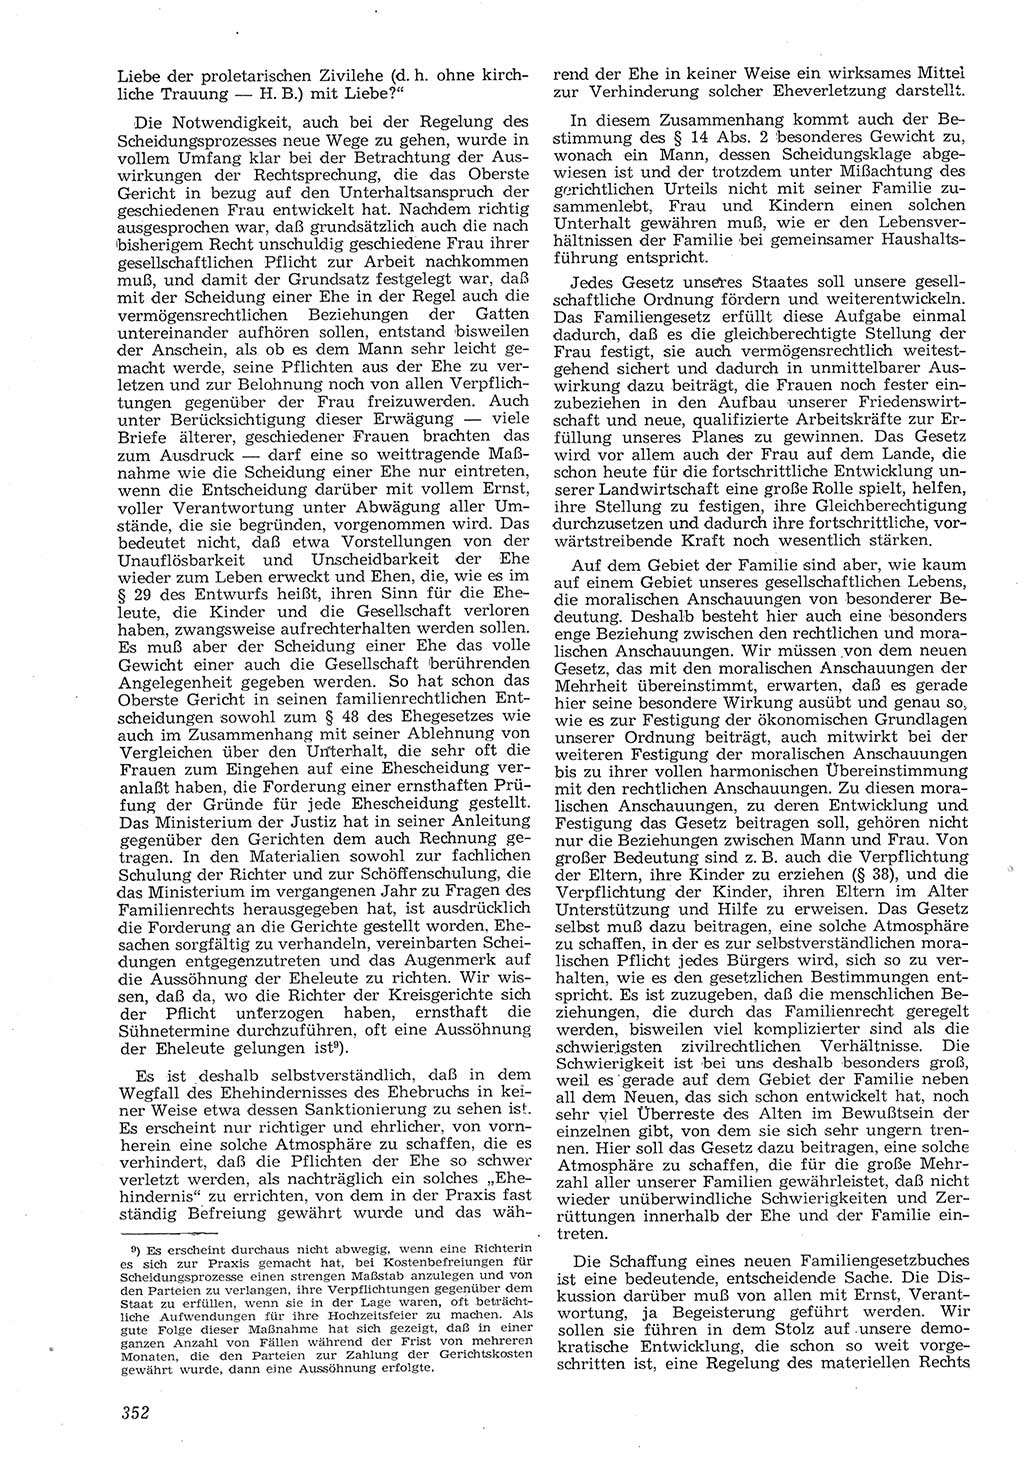 Neue Justiz (NJ), Zeitschrift für Recht und Rechtswissenschaft [Deutsche Demokratische Republik (DDR)], 8. Jahrgang 1954, Seite 352 (NJ DDR 1954, S. 352)